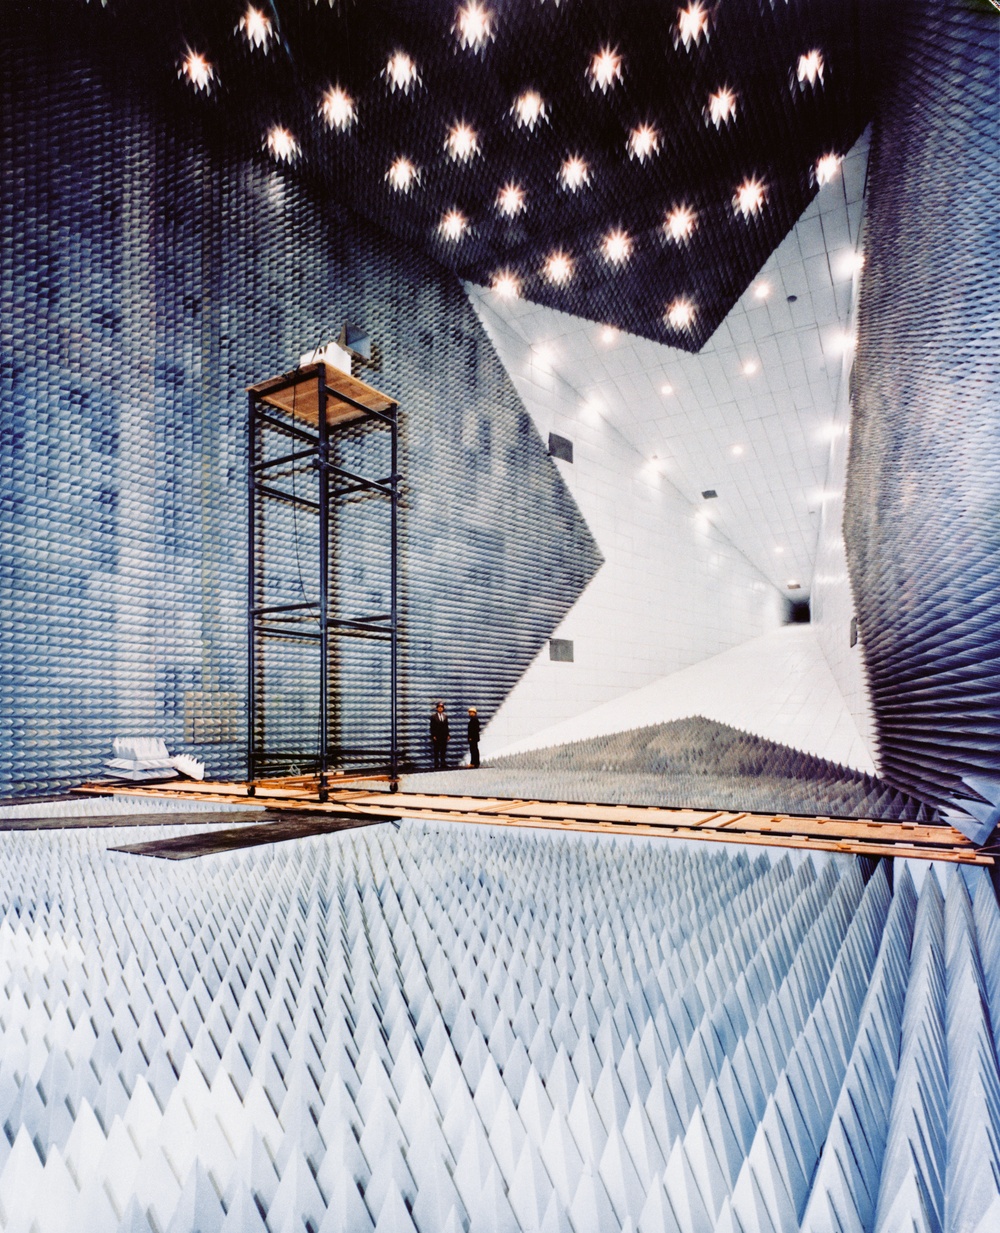 Radar test chamber at NASA